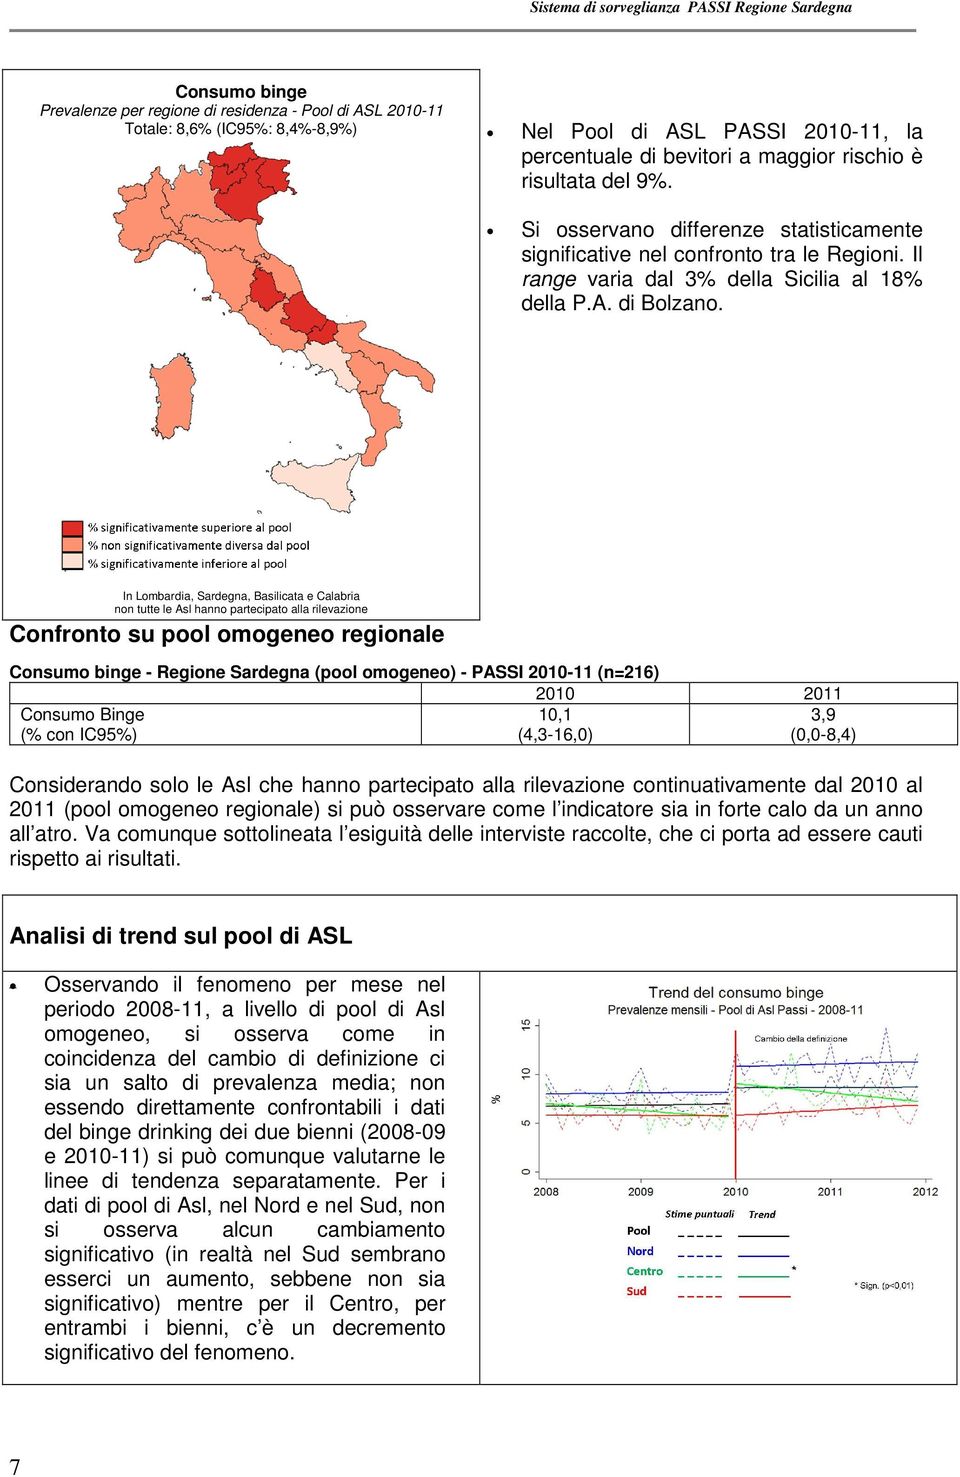 In Lombardia, Sardegna, Basilicata e Calabria non tutte le Asl hanno partecipato alla rilevazione Confronto su pool omogeneo regionale Consumo binge - Regione Sardegna (pool omogeneo) - PASSI 2010-11